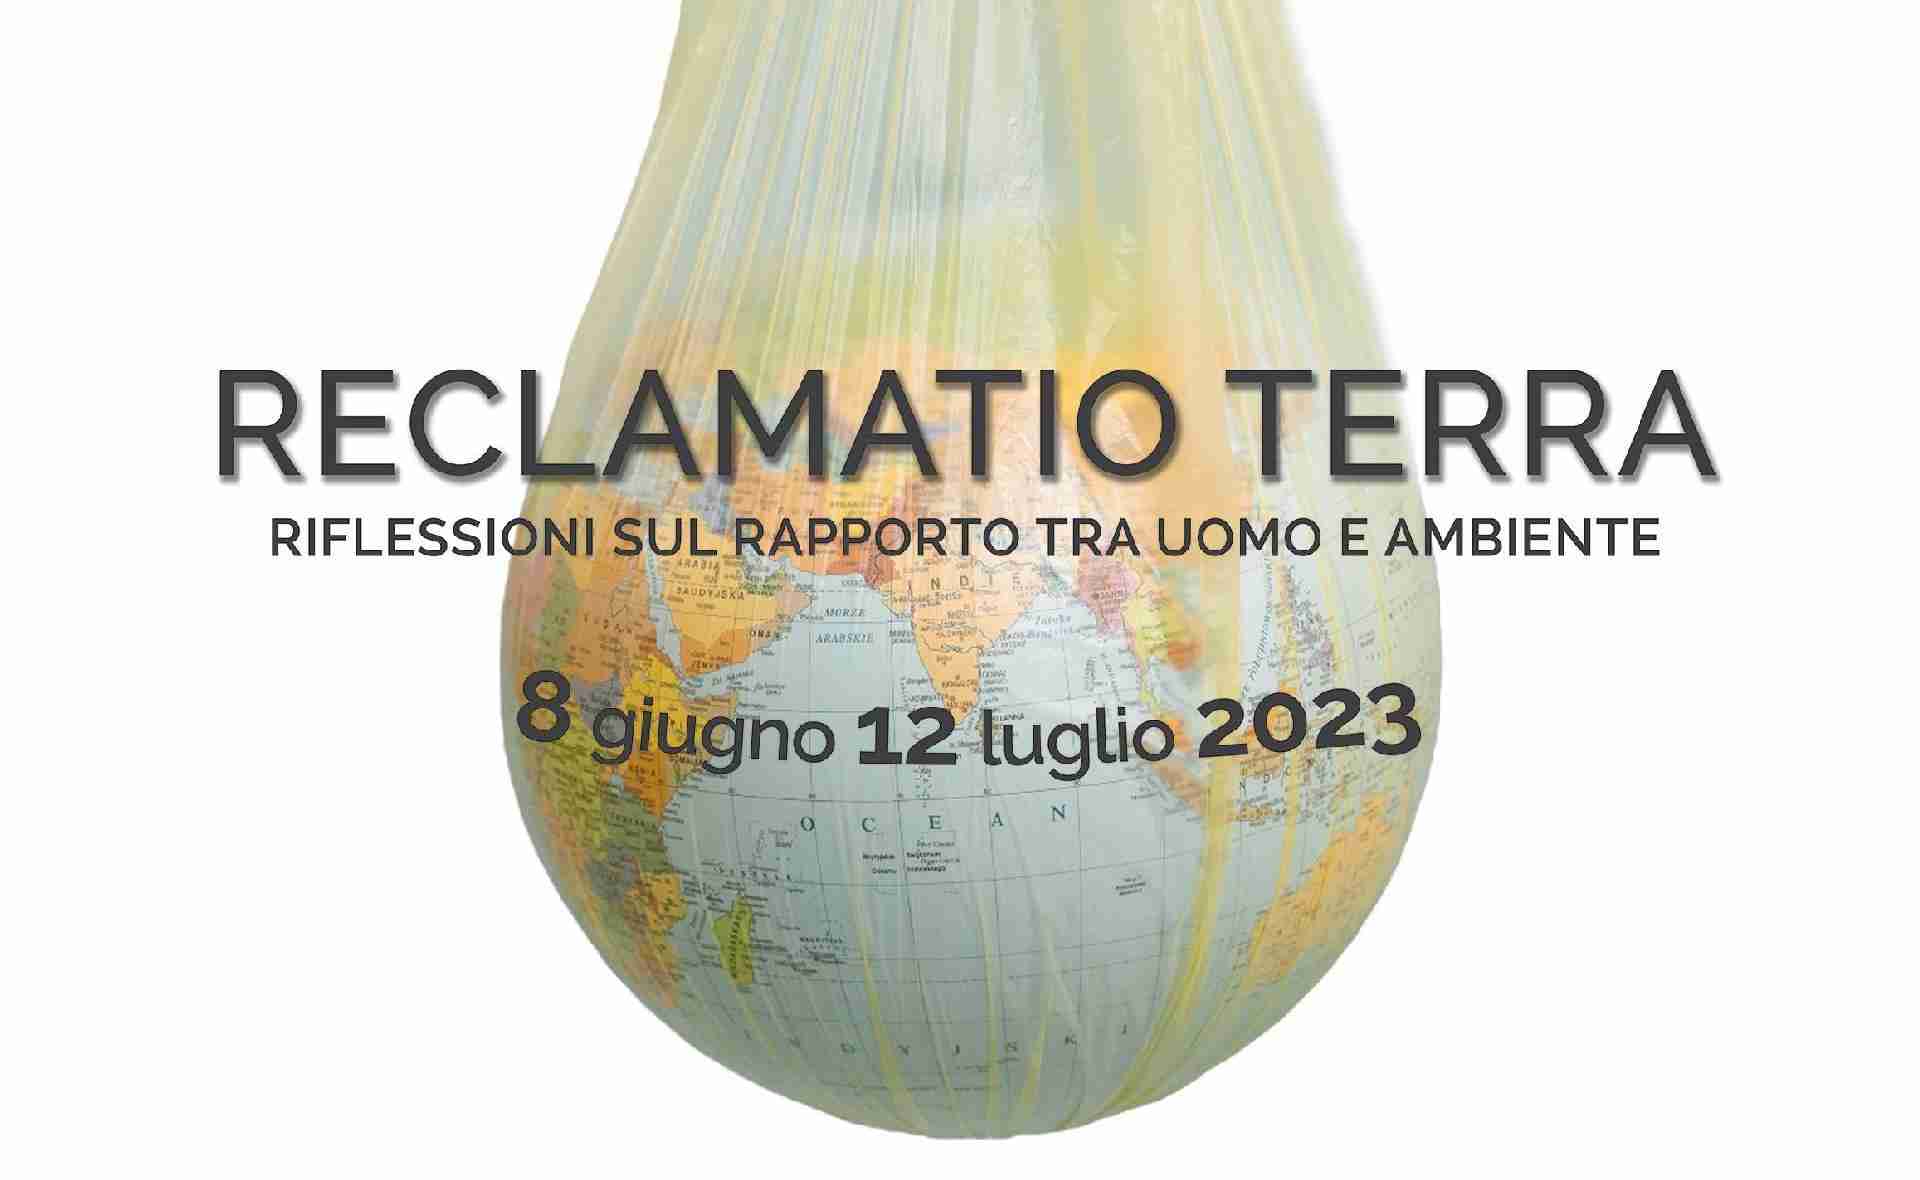 RECLAMATIO TERRA - kortárs kiállítás